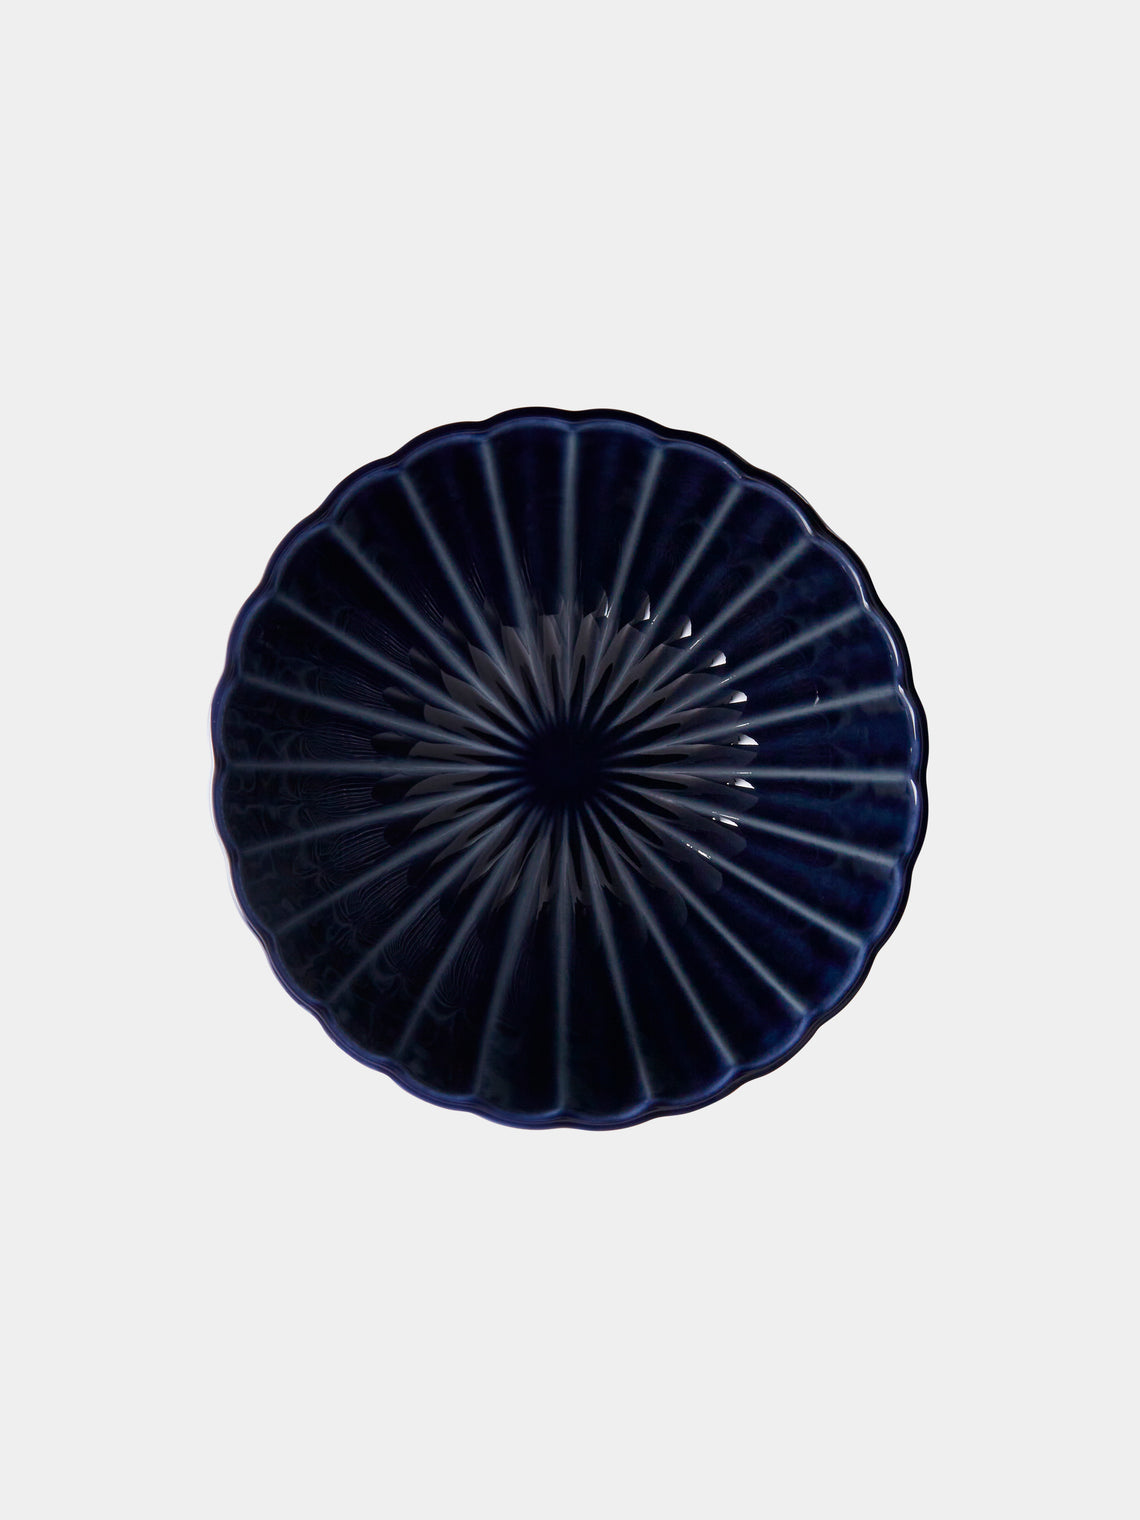 Kaneko Kohyo - Giyaman Urushi Ceramic Deep Bowls (Set of 4) - Blue - ABASK